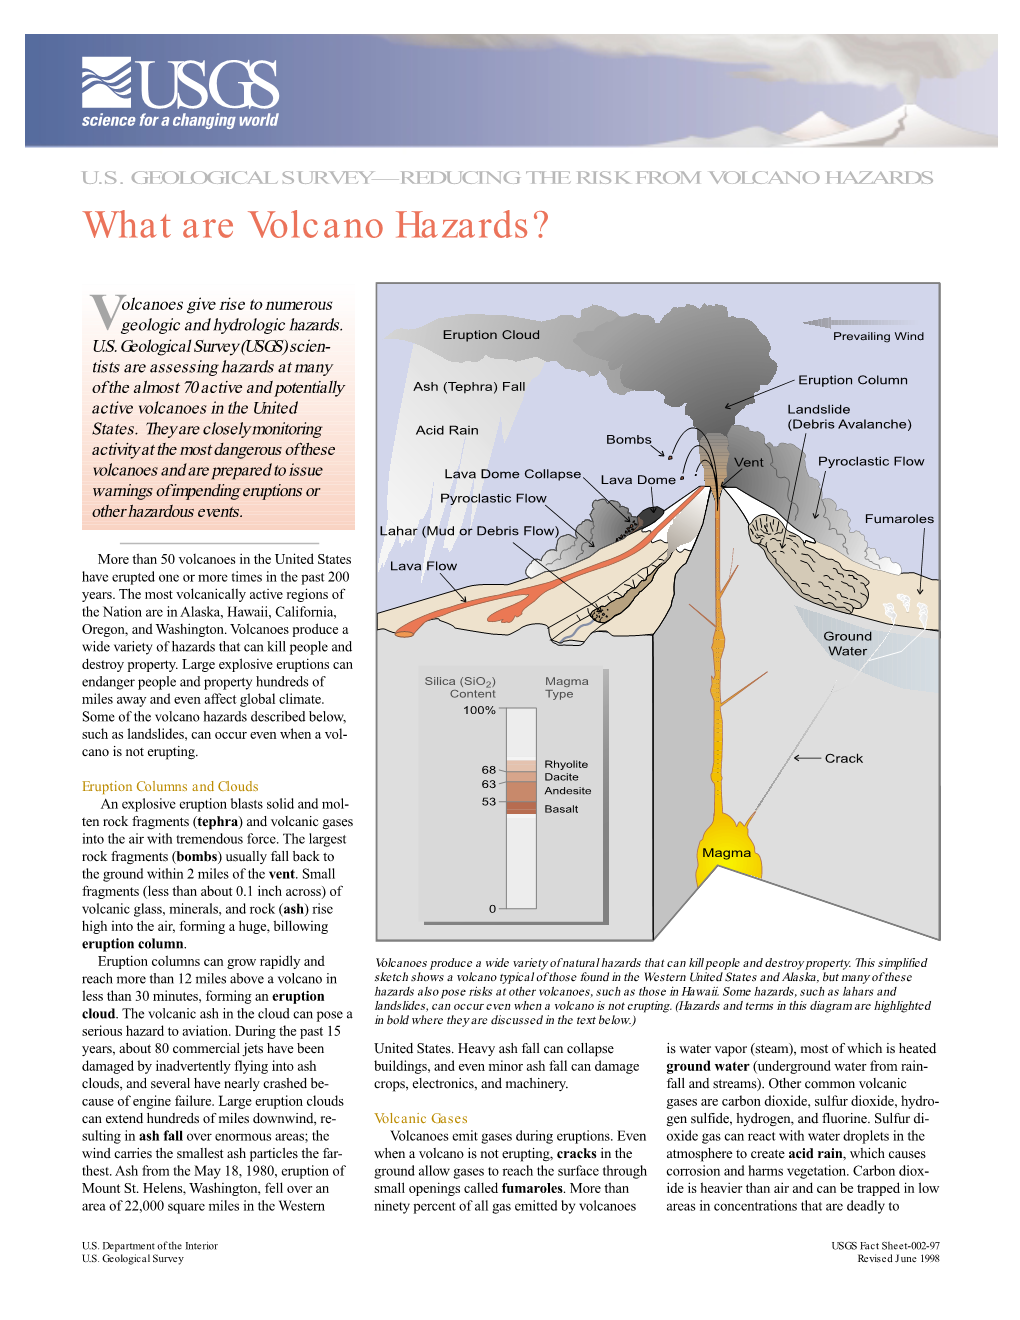 What Are Volcano Hazards?